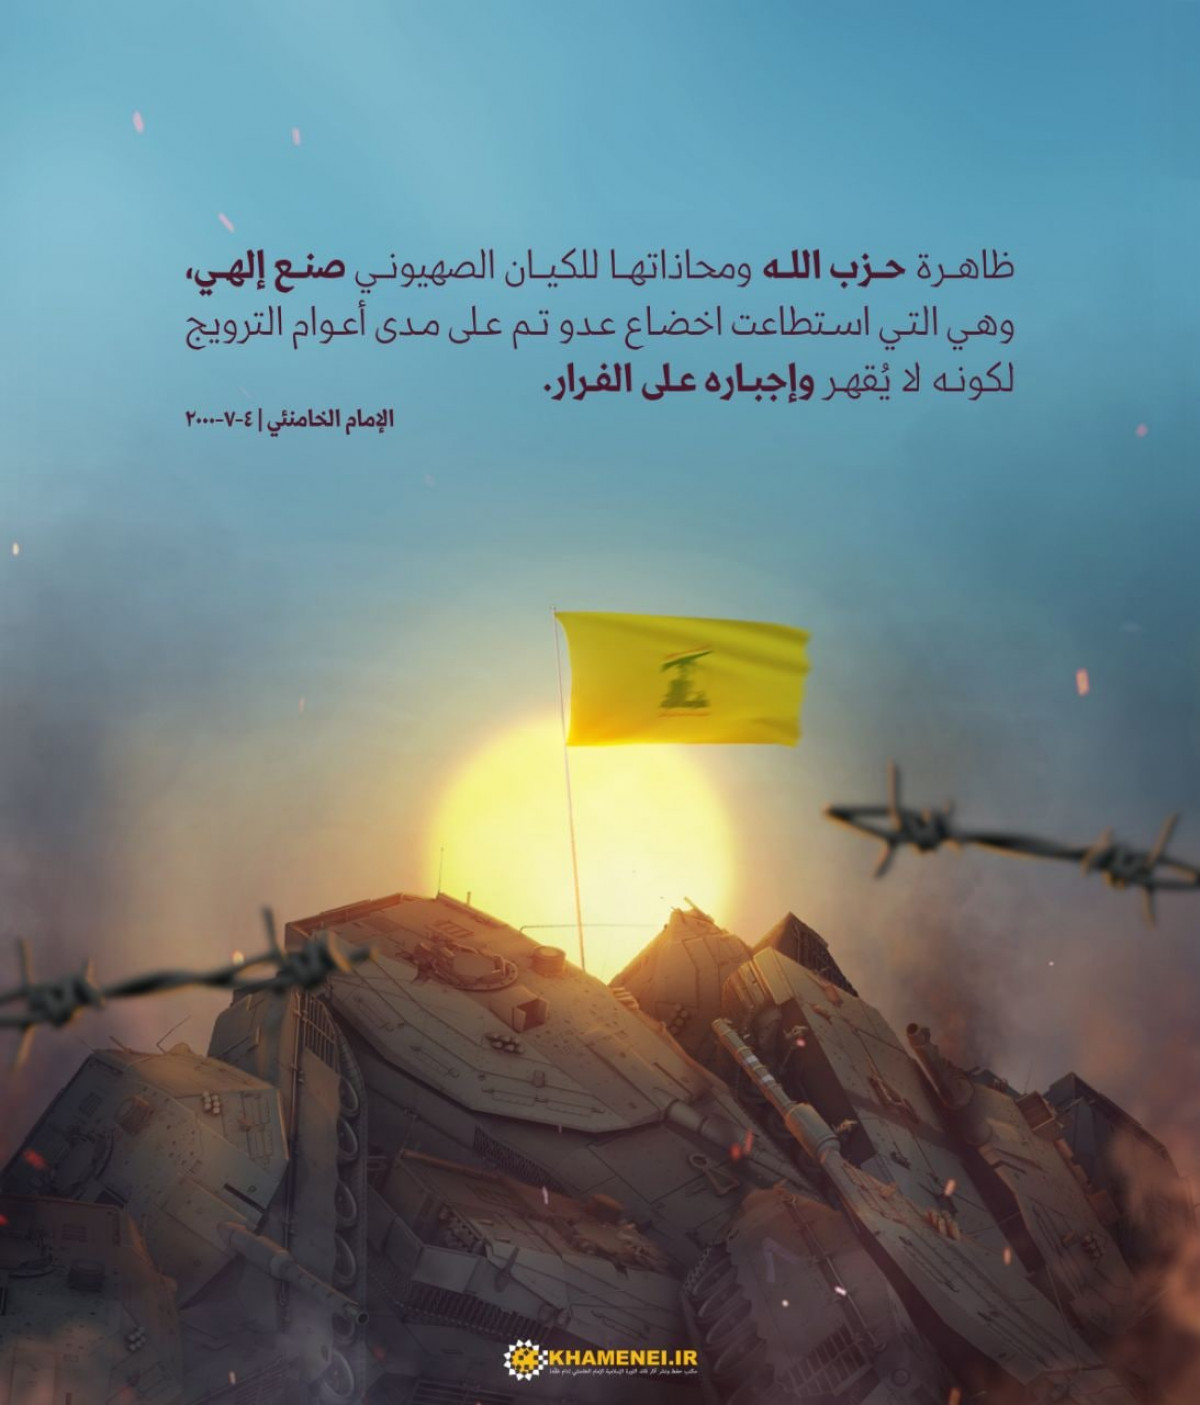 ظاهرة حزب الله صنعٌ إلهي وقد استطاعت إخضاع الكيان الصهيوني